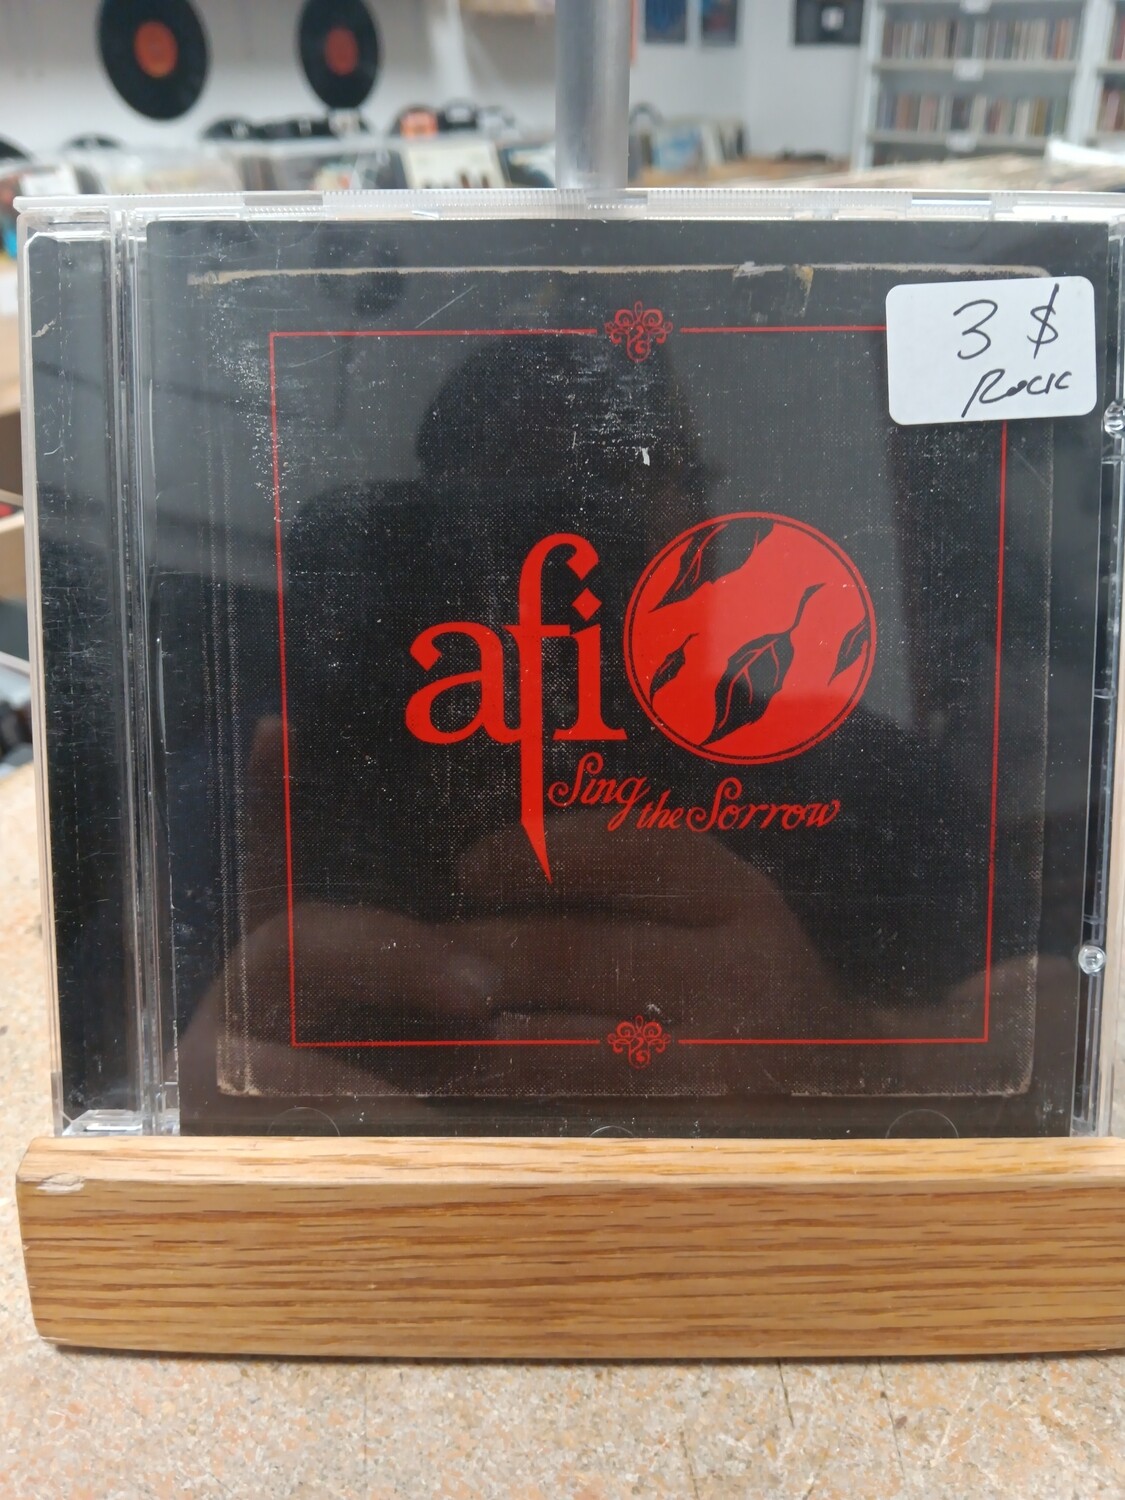 AFI - Sing the sorrow (CD)